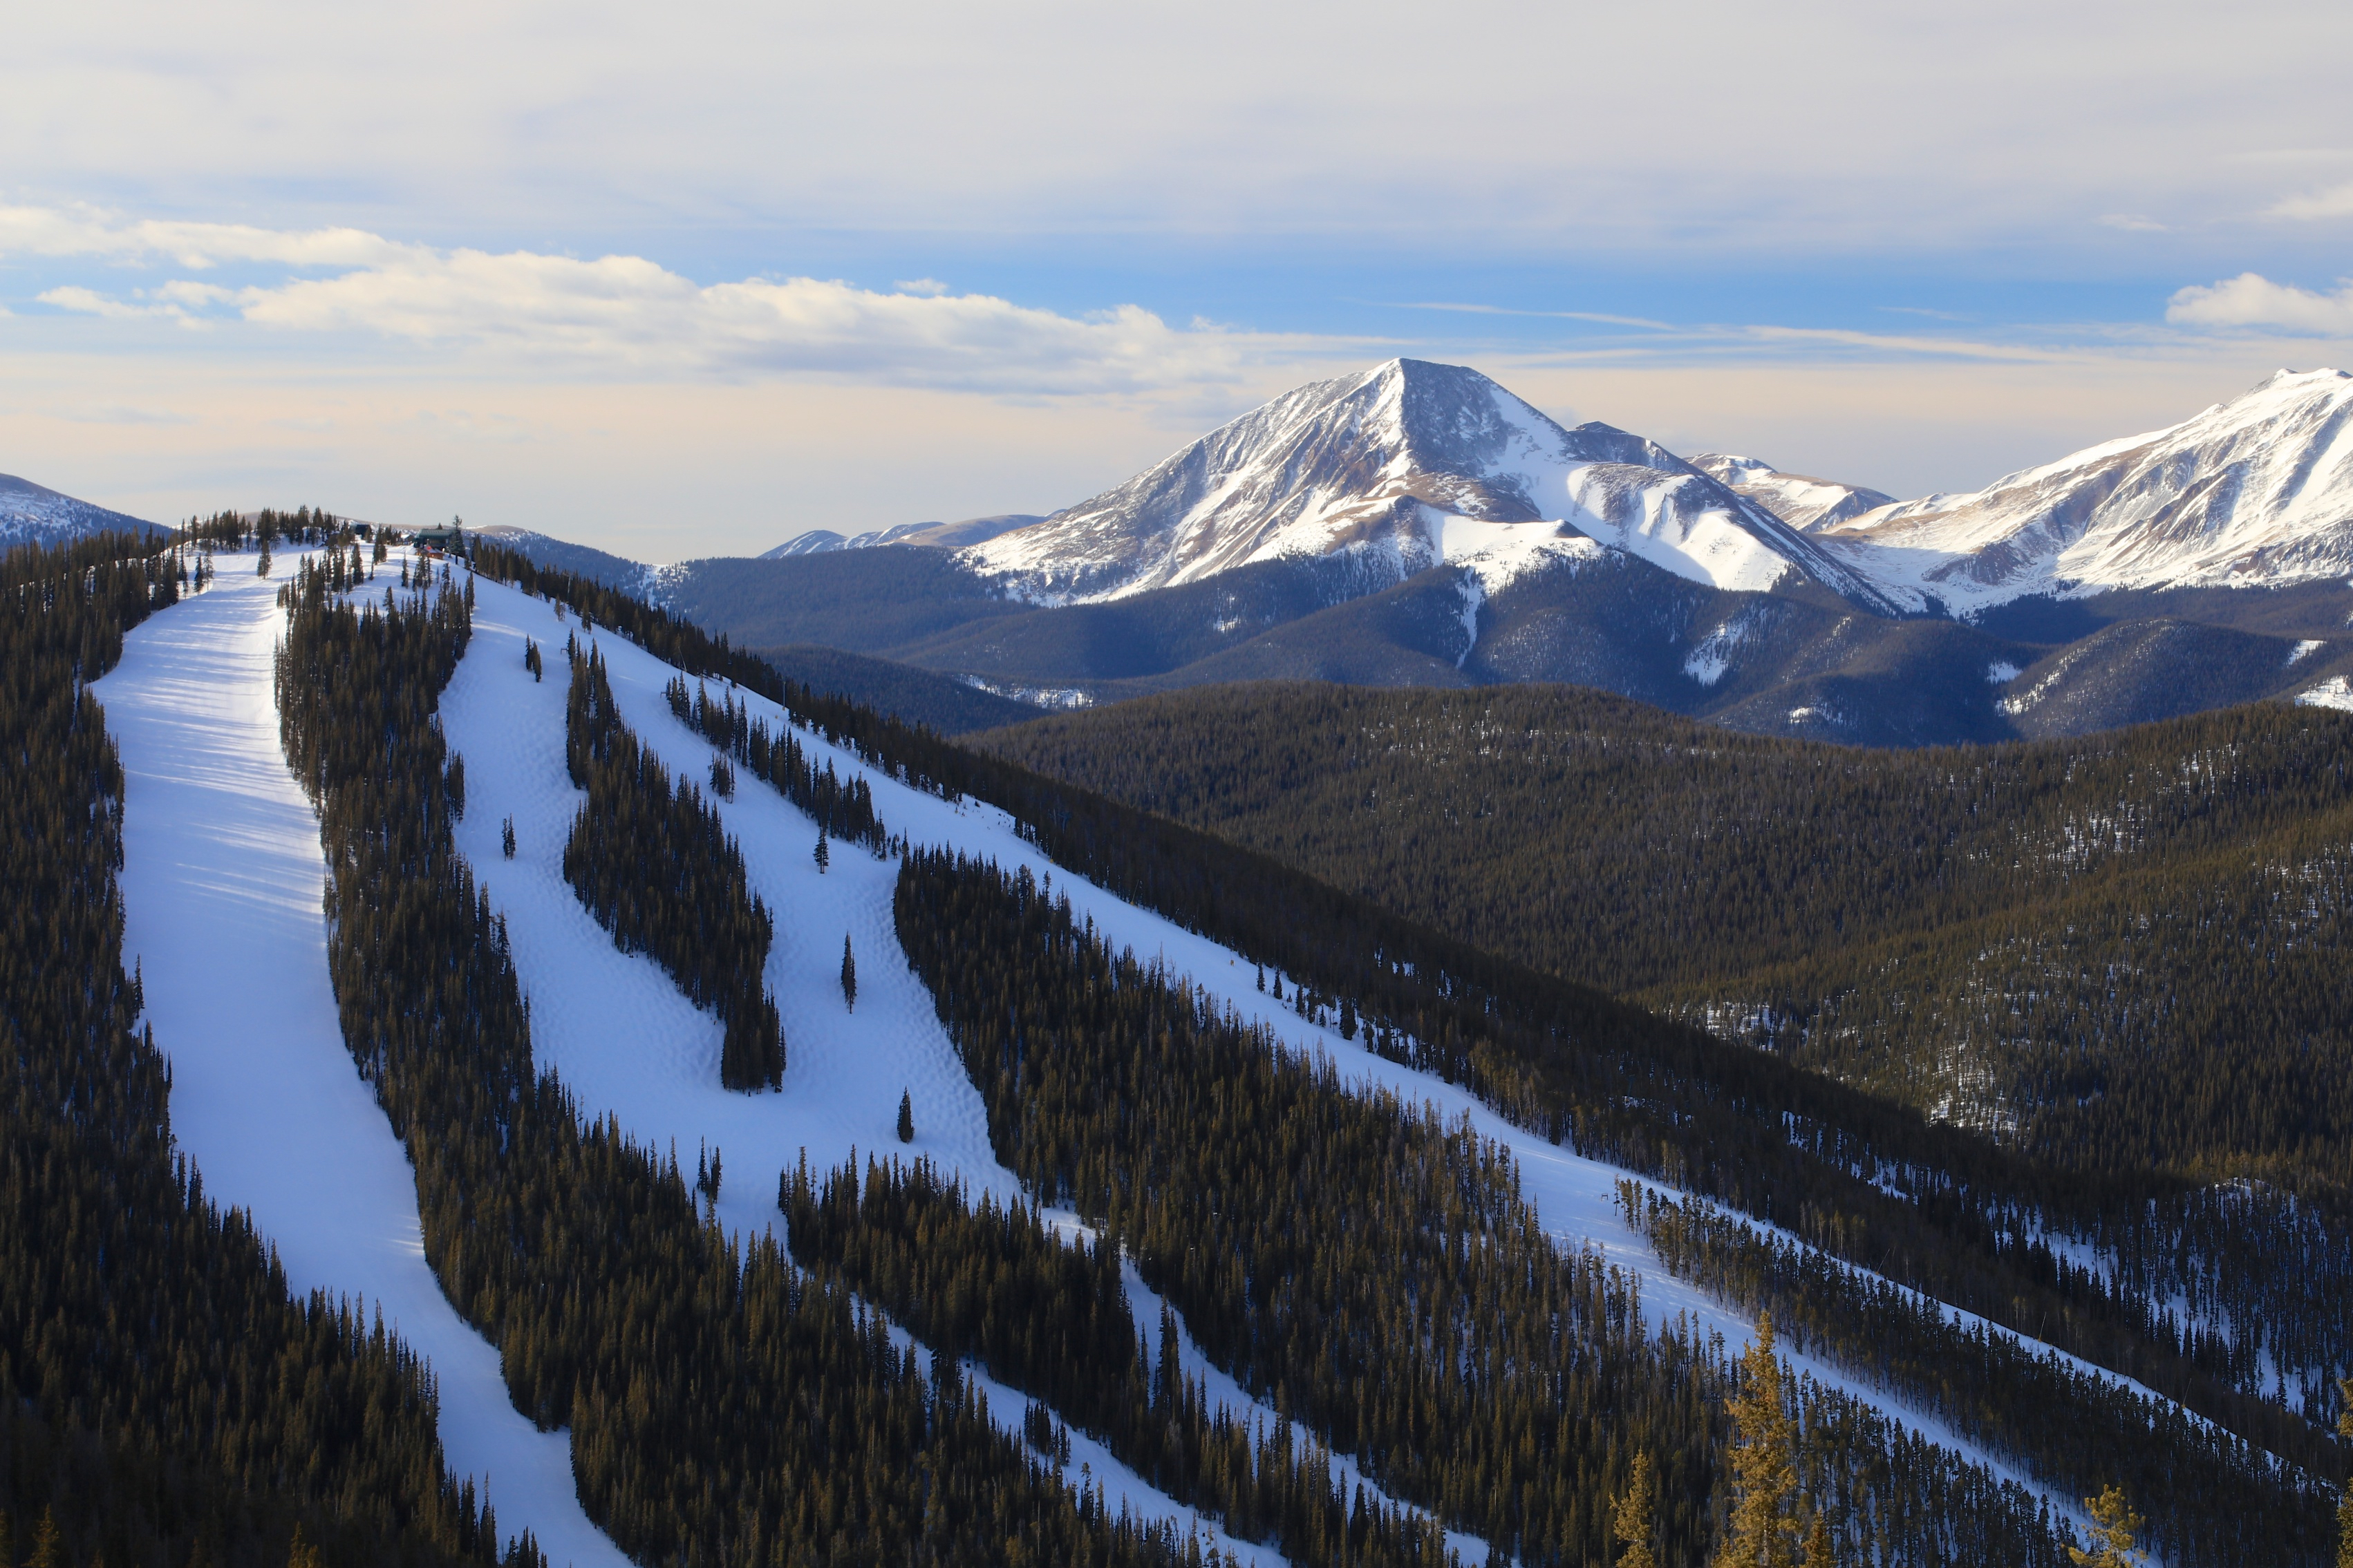 Ski slope in Keystone Colorado